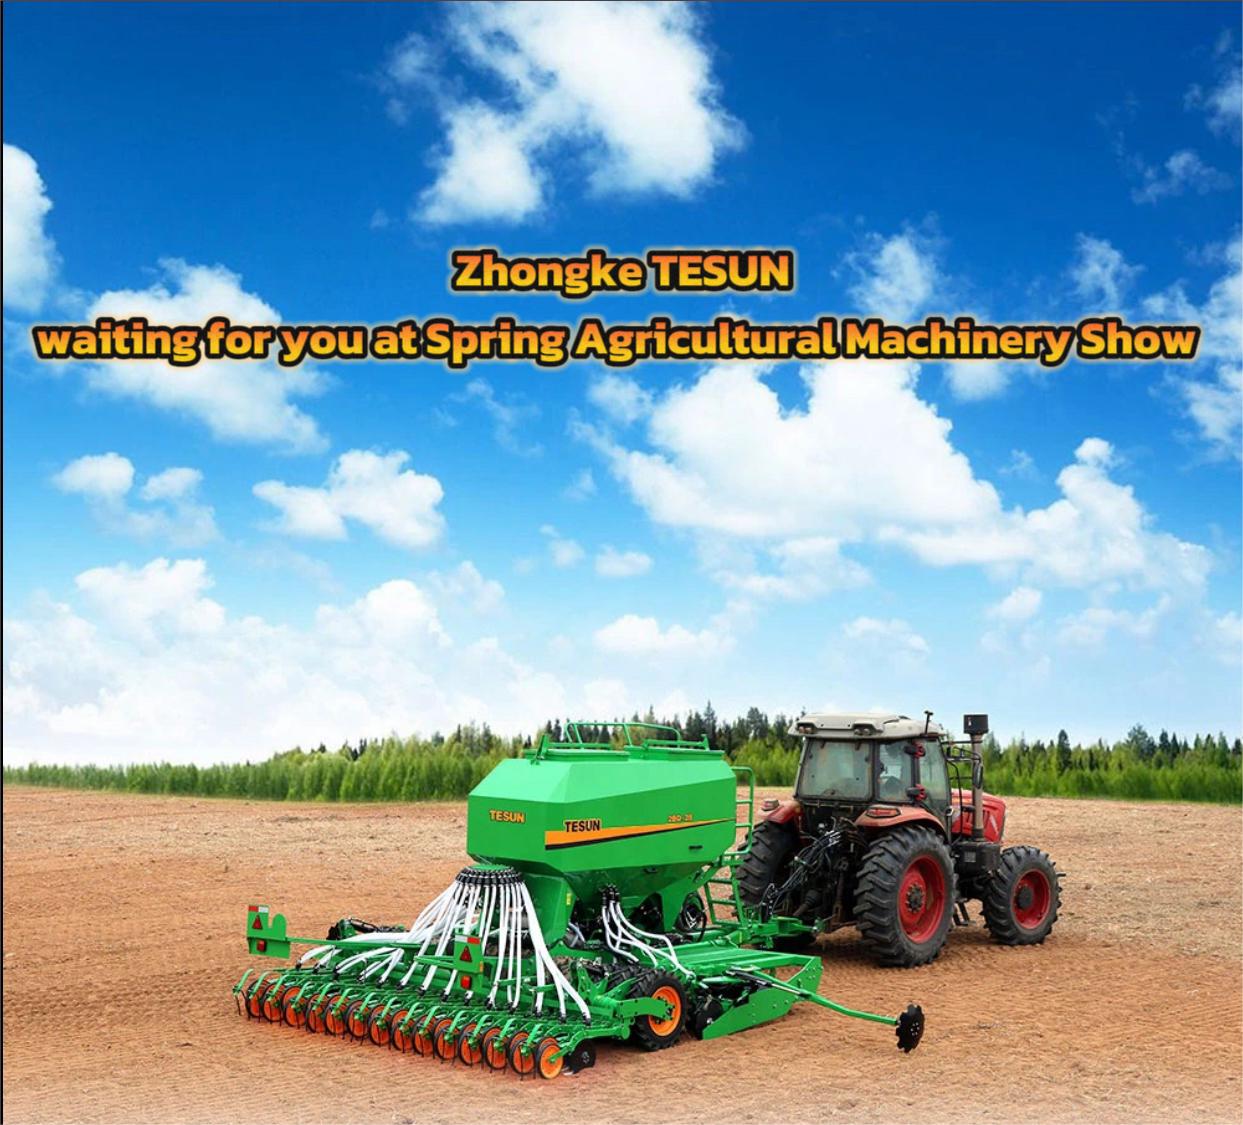 Zhongke TESUN ждет вас на весенней выставке сельскохозяйственной техники